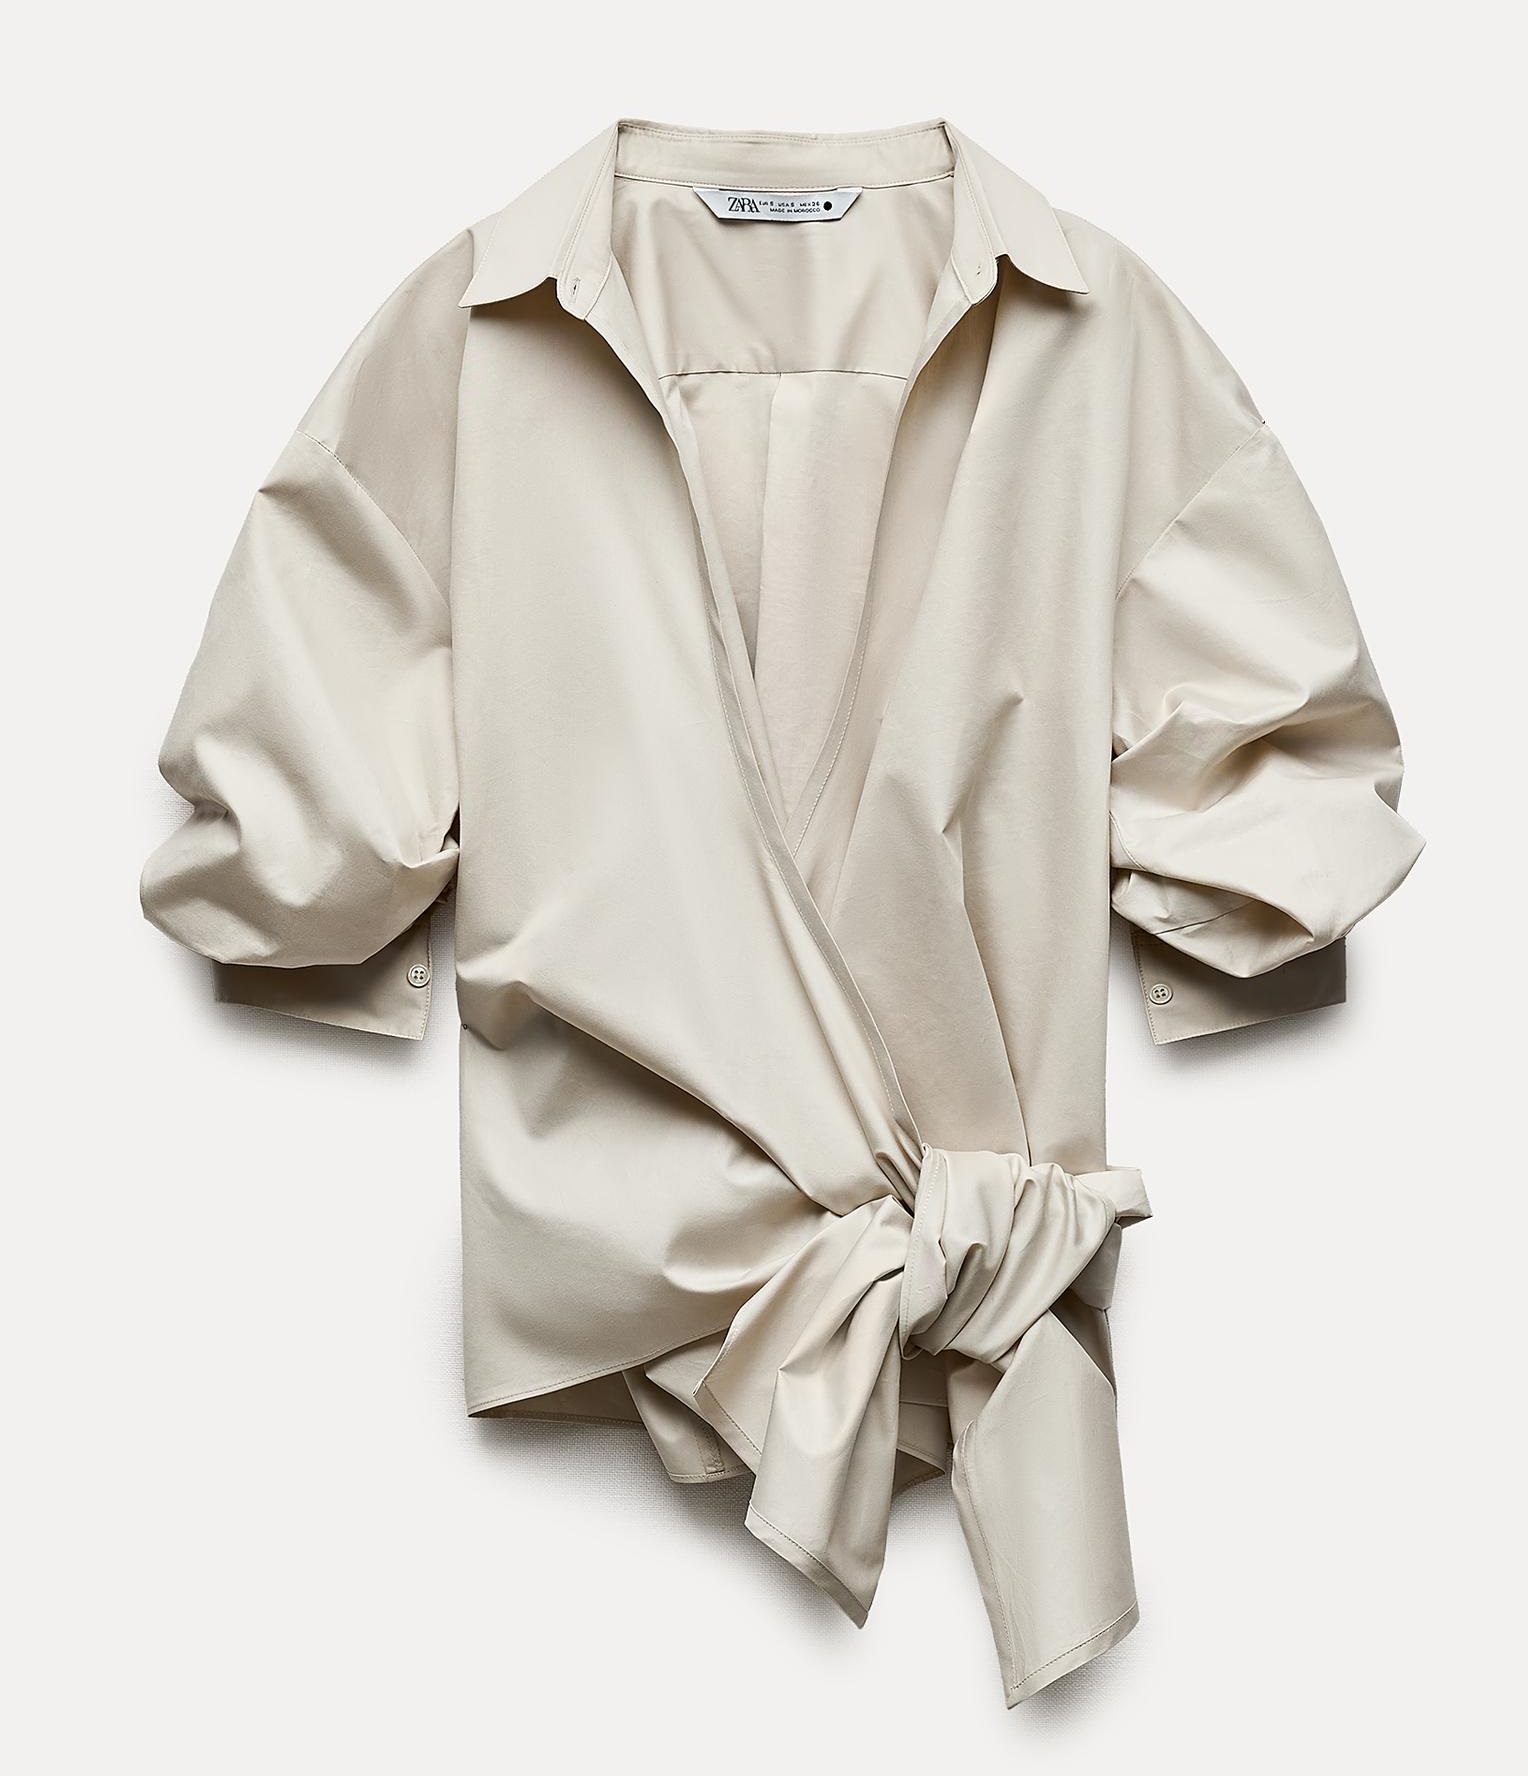 Рубашка Zara Zw Collection Crossover With Tie Detail, бежевый 12storeez рубашка в клетку с бантом